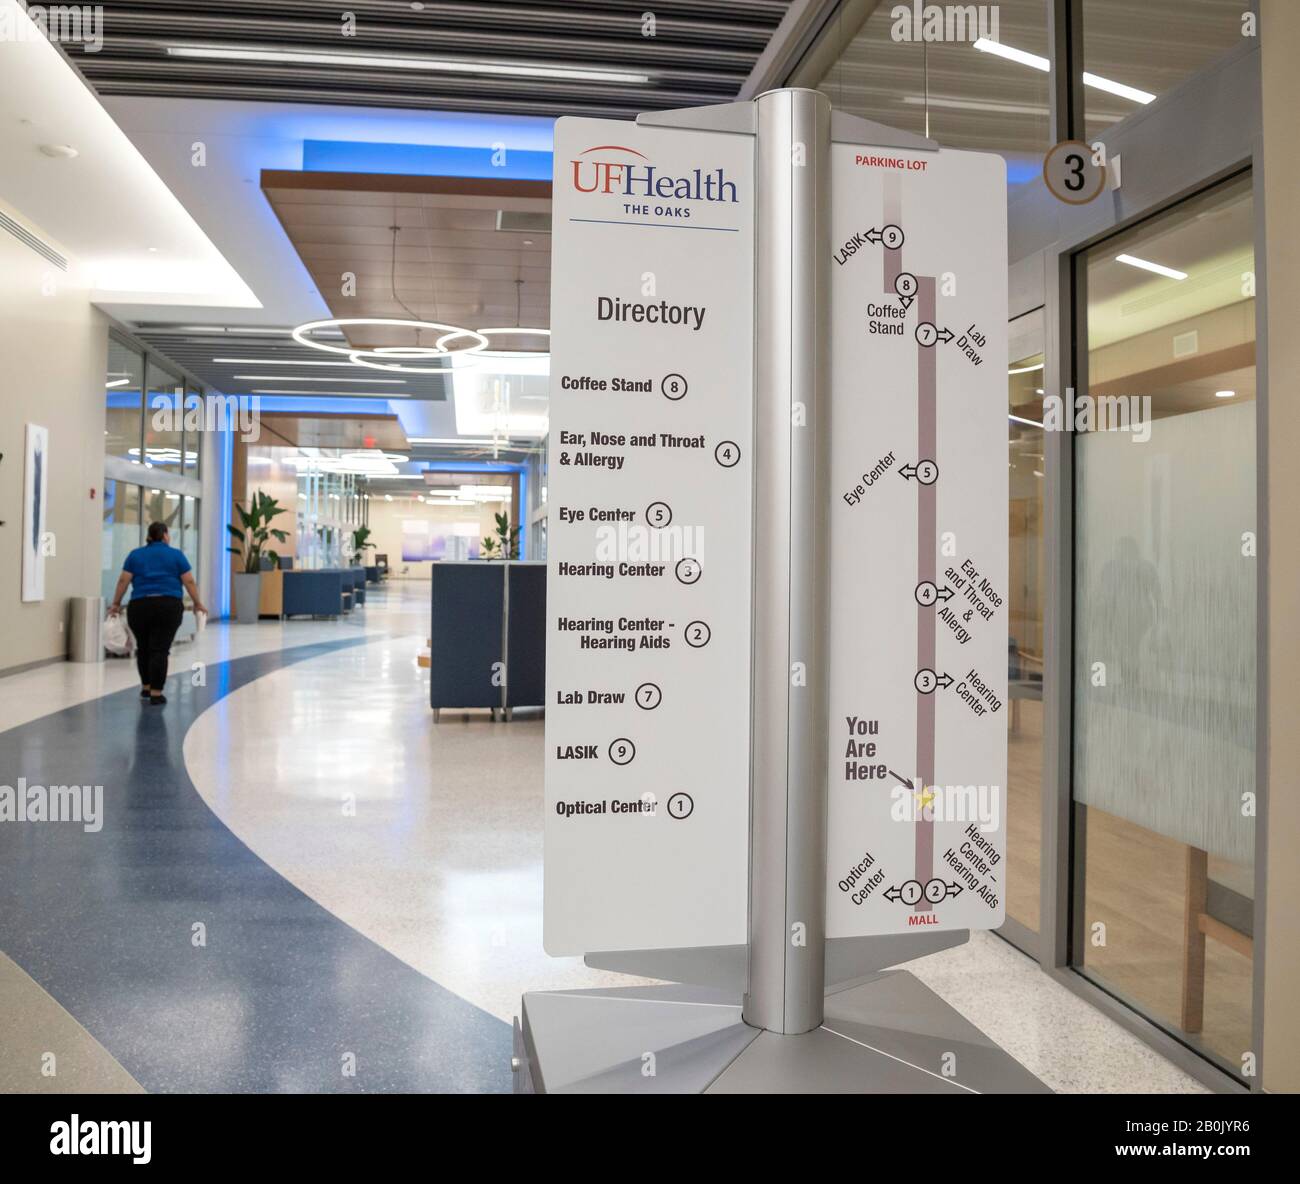 La University of Florida Health Facility si è recentemente aperta all'Oaks Mall di Gainesville, Florida. Foto Stock